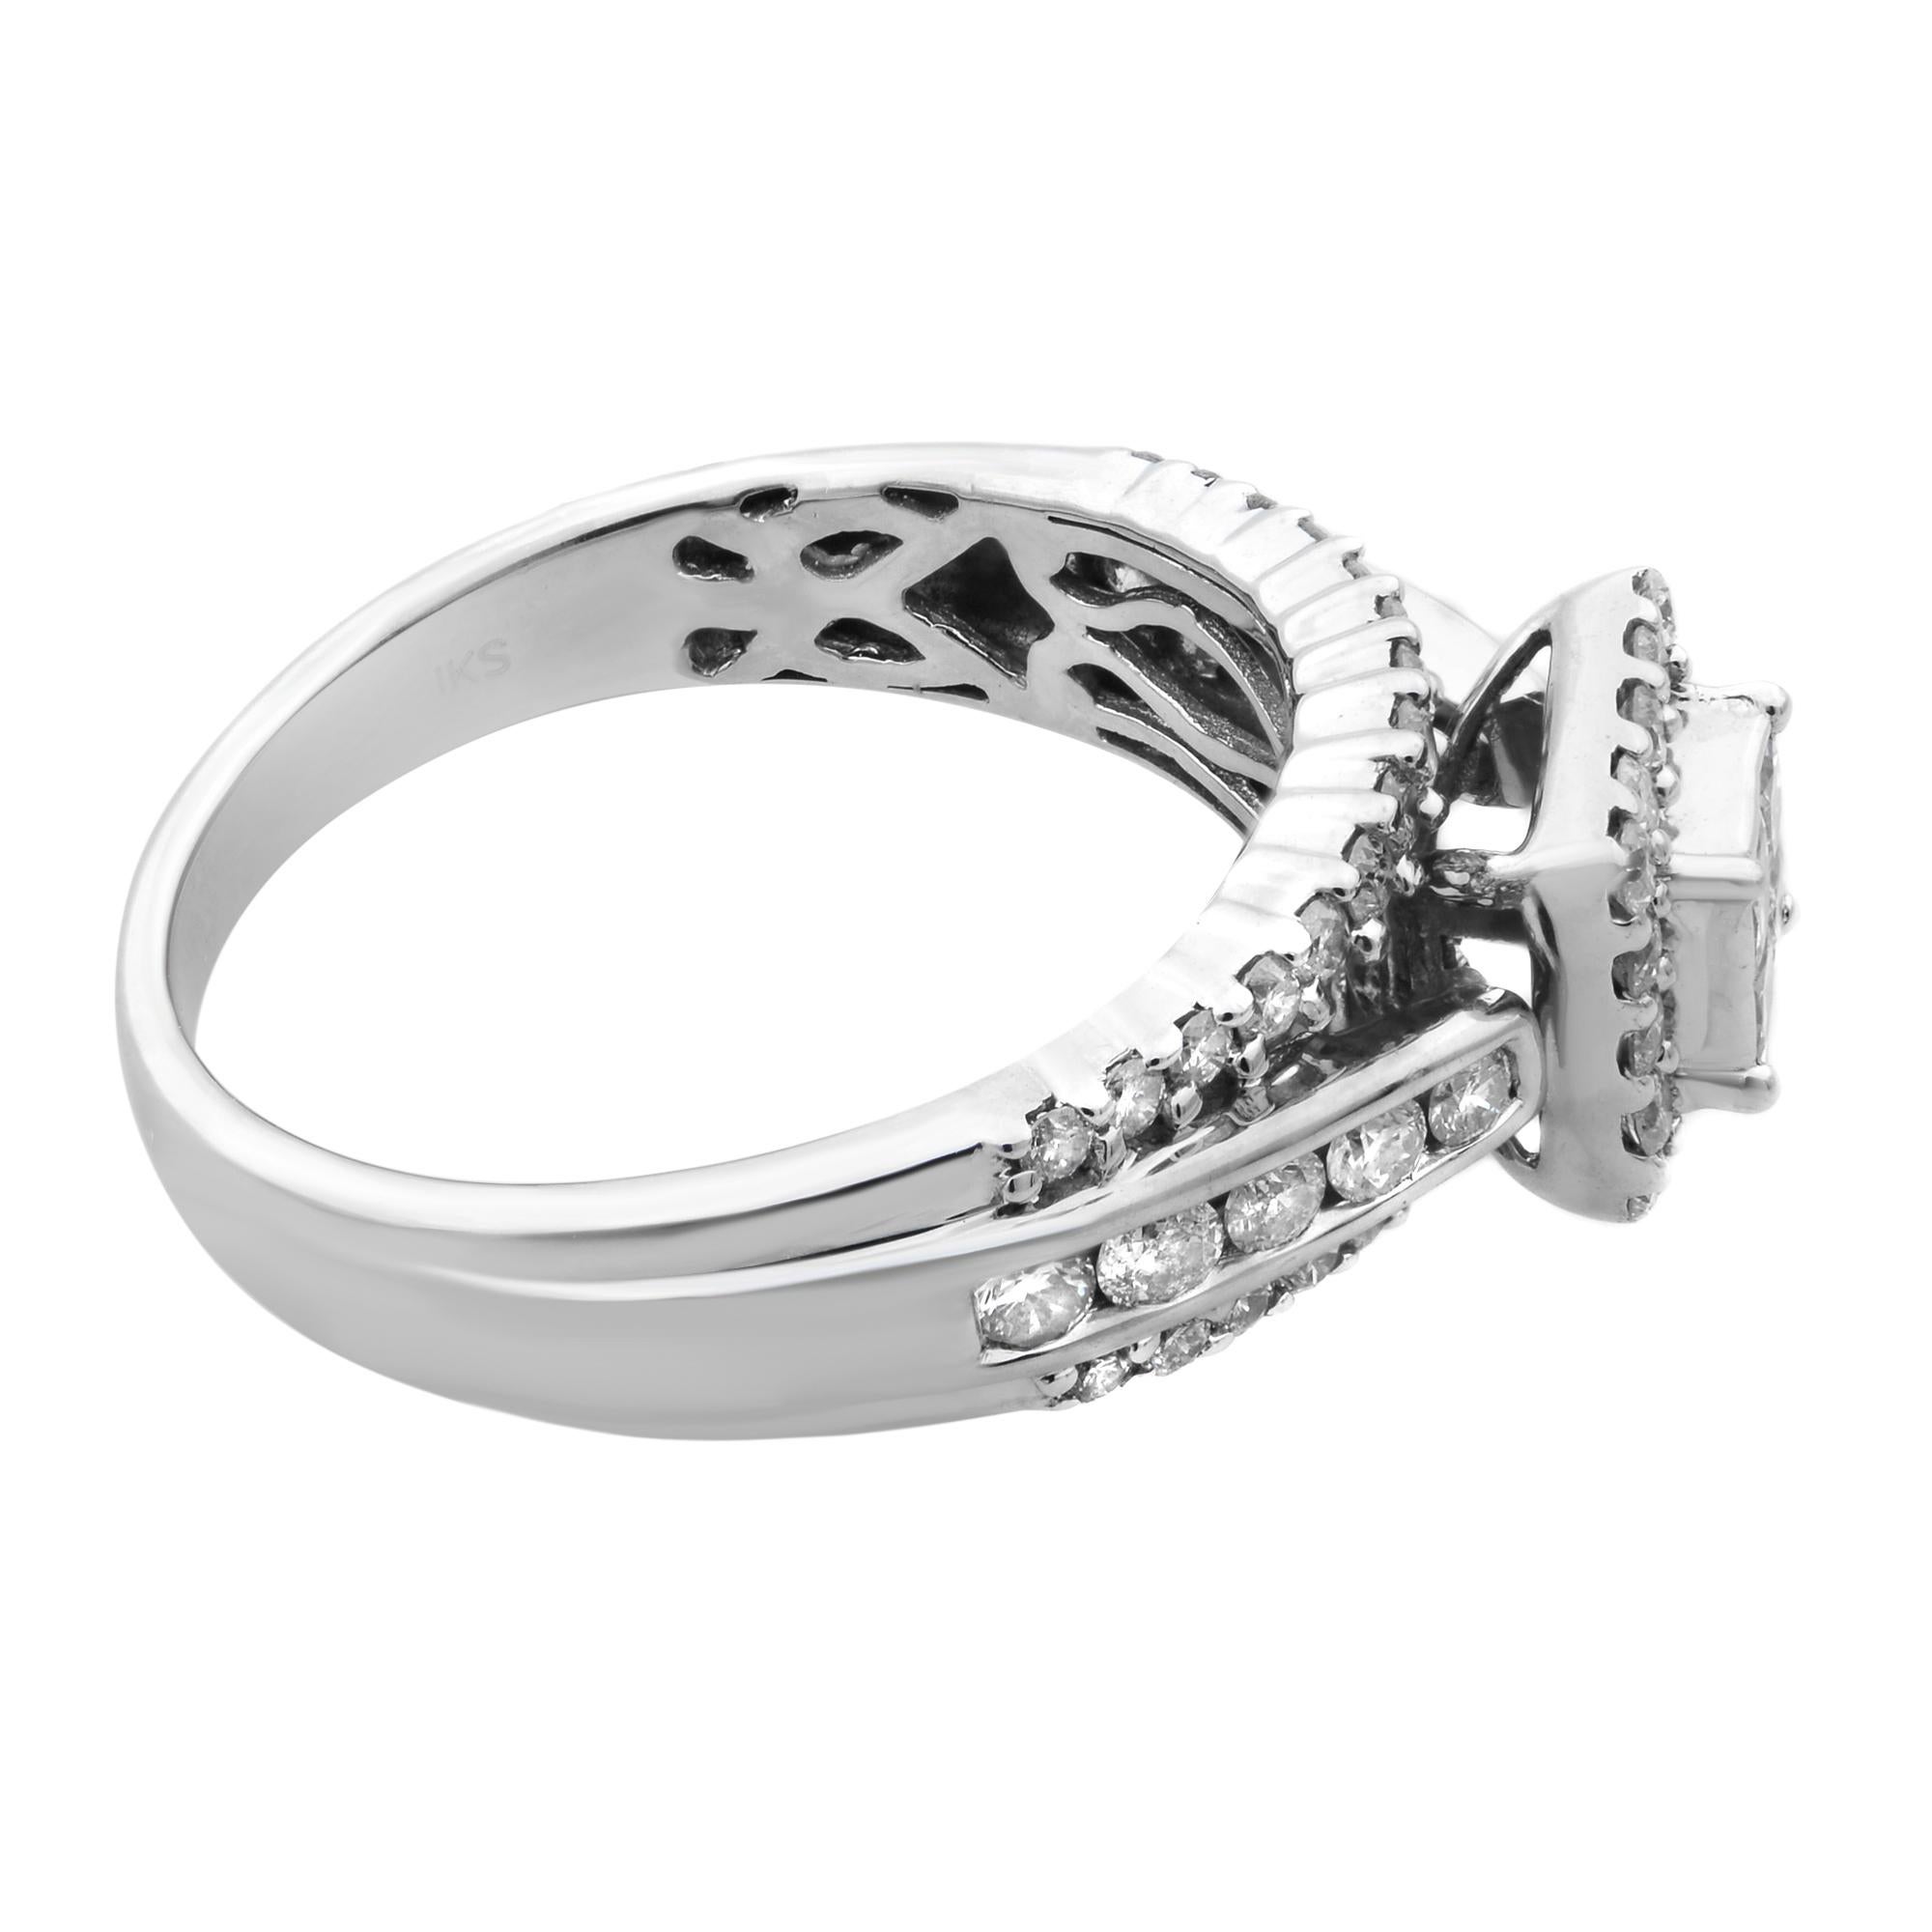 Modern Rachel Koen Diamond Ladies Wedding Ring 14K White Gold 1.25cttw For Sale